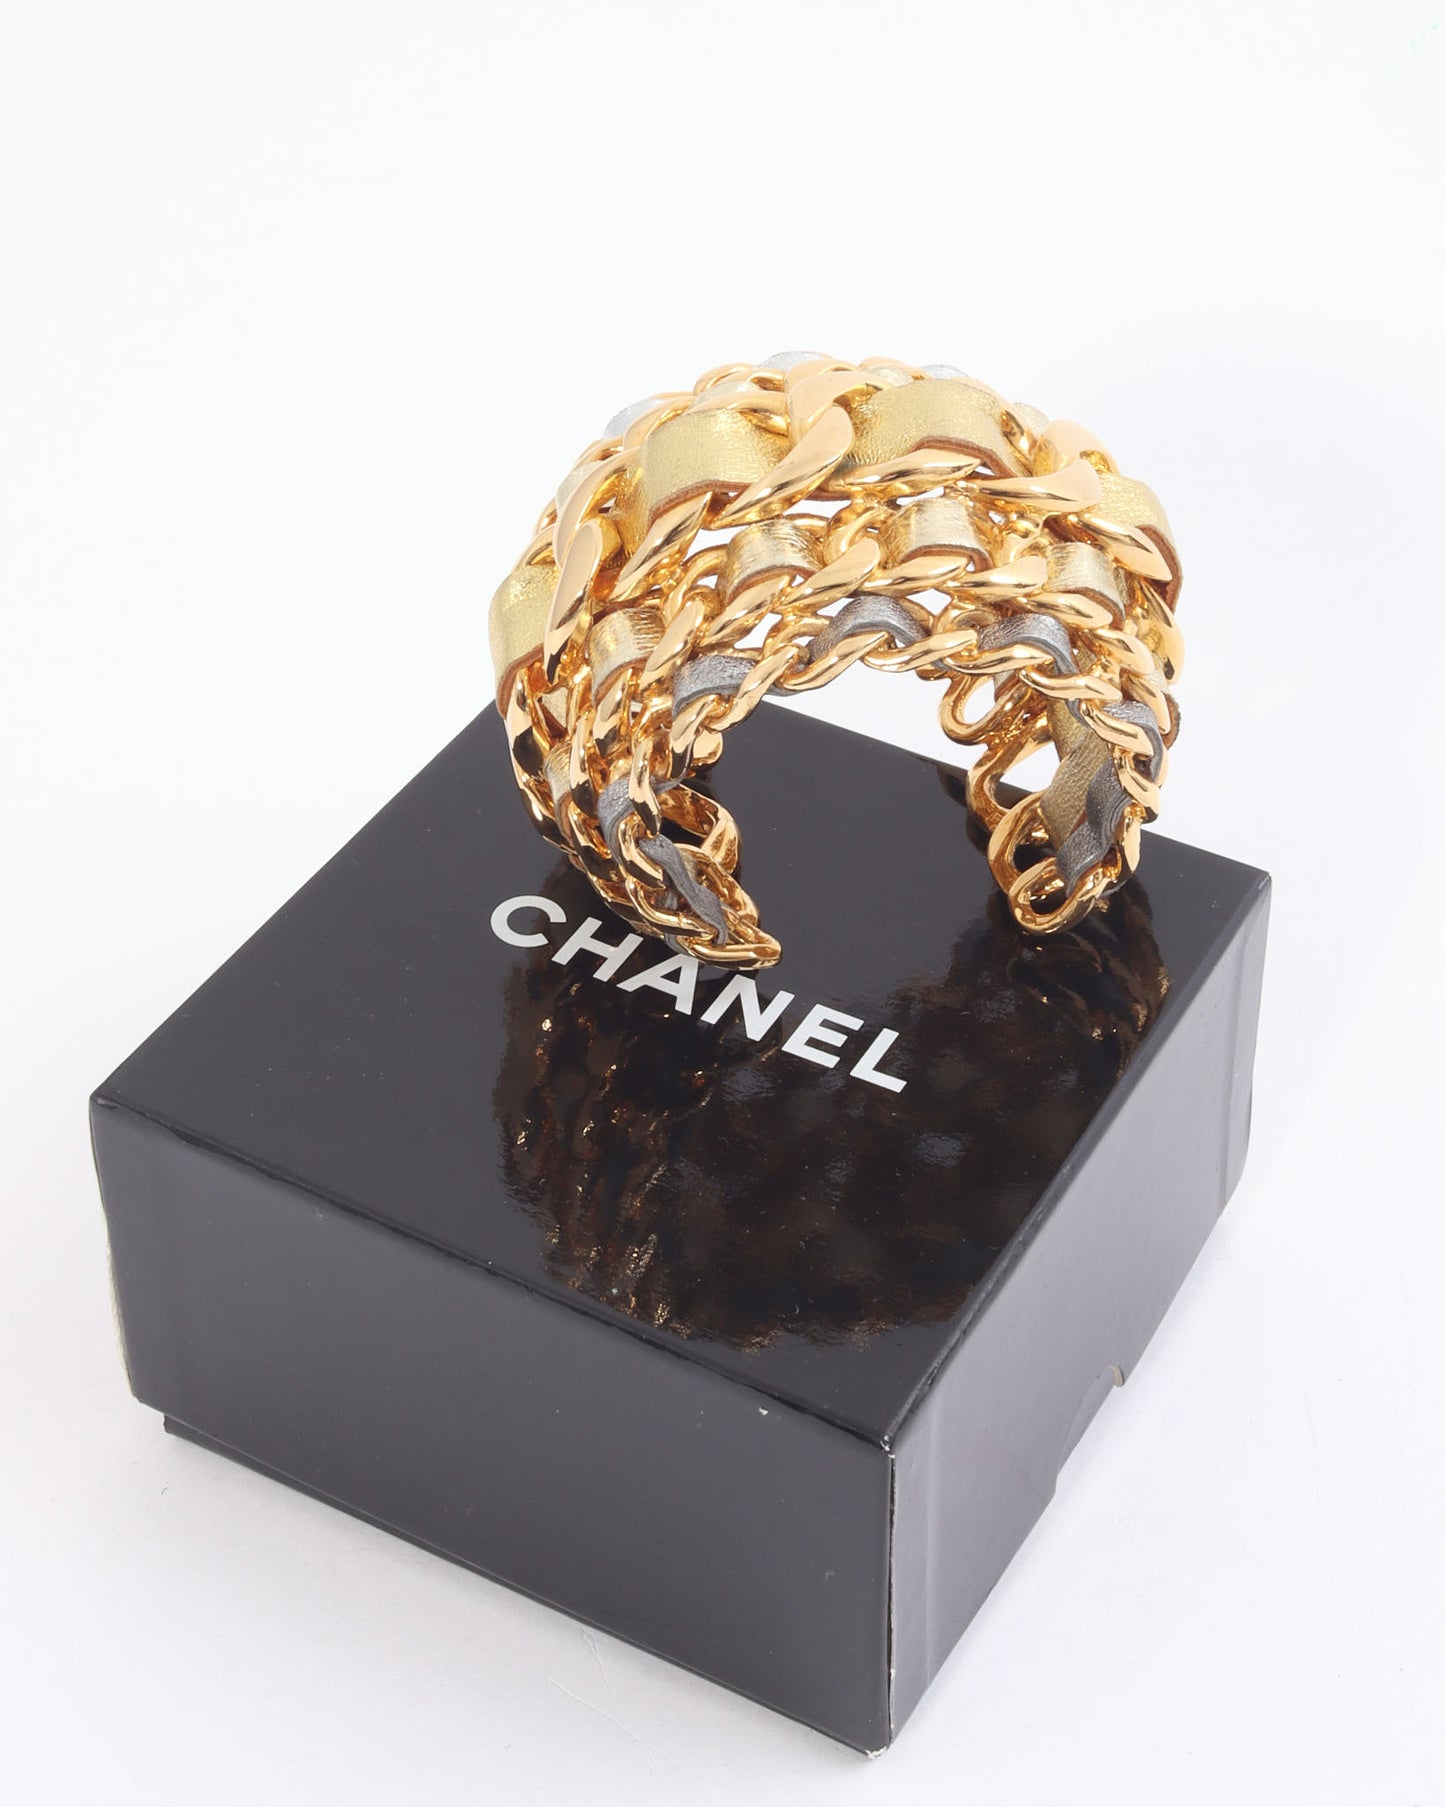 Manchette chaîne en cuir tissé métallisé or/argent vintage Chanel